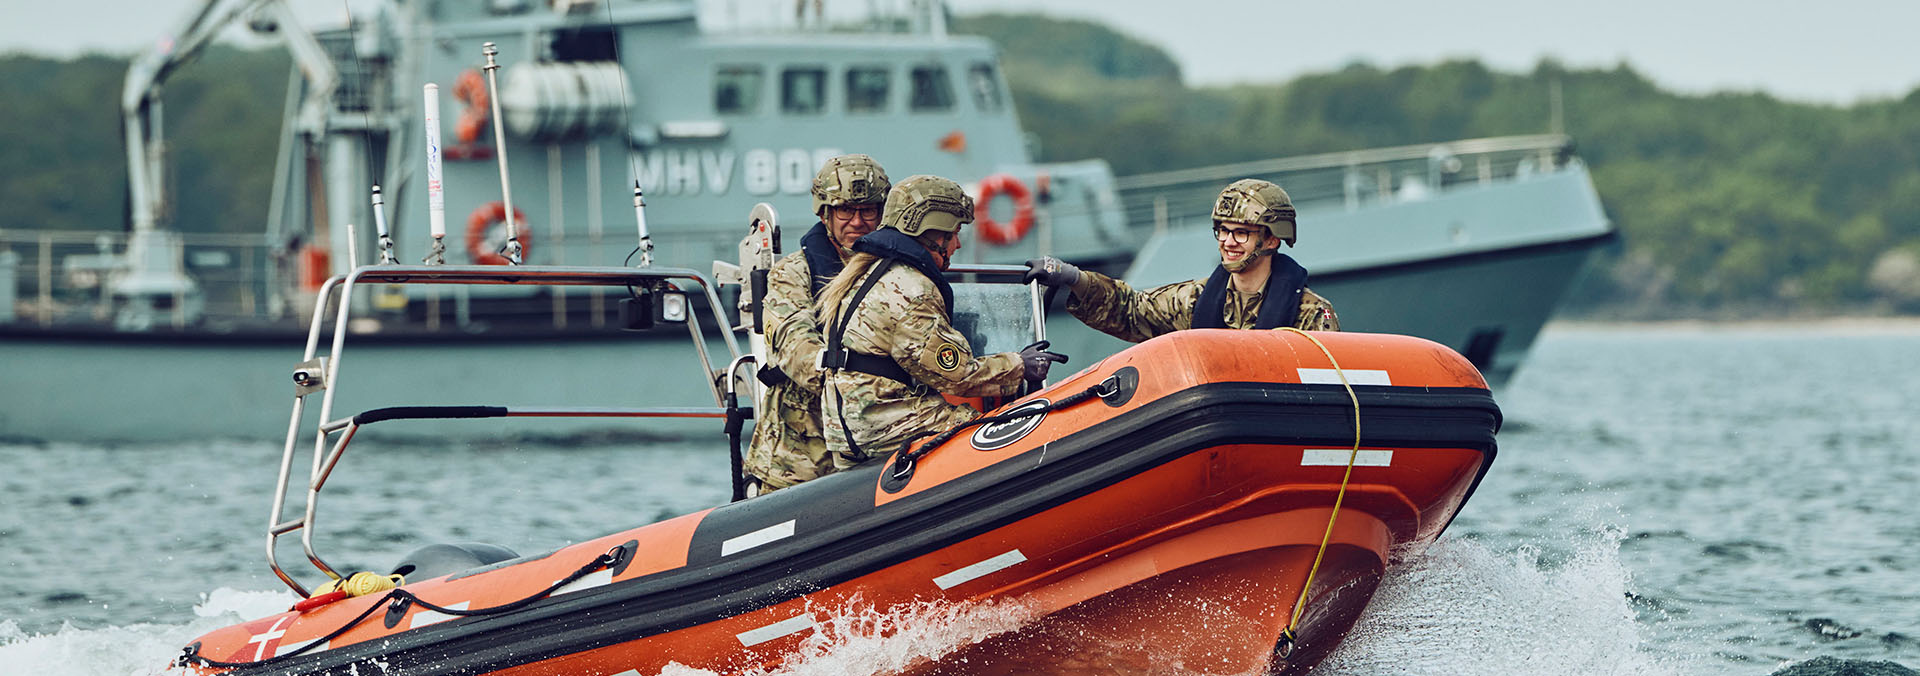 Medlemmer af Marinehjemmeværnet øver gummibådssejlads